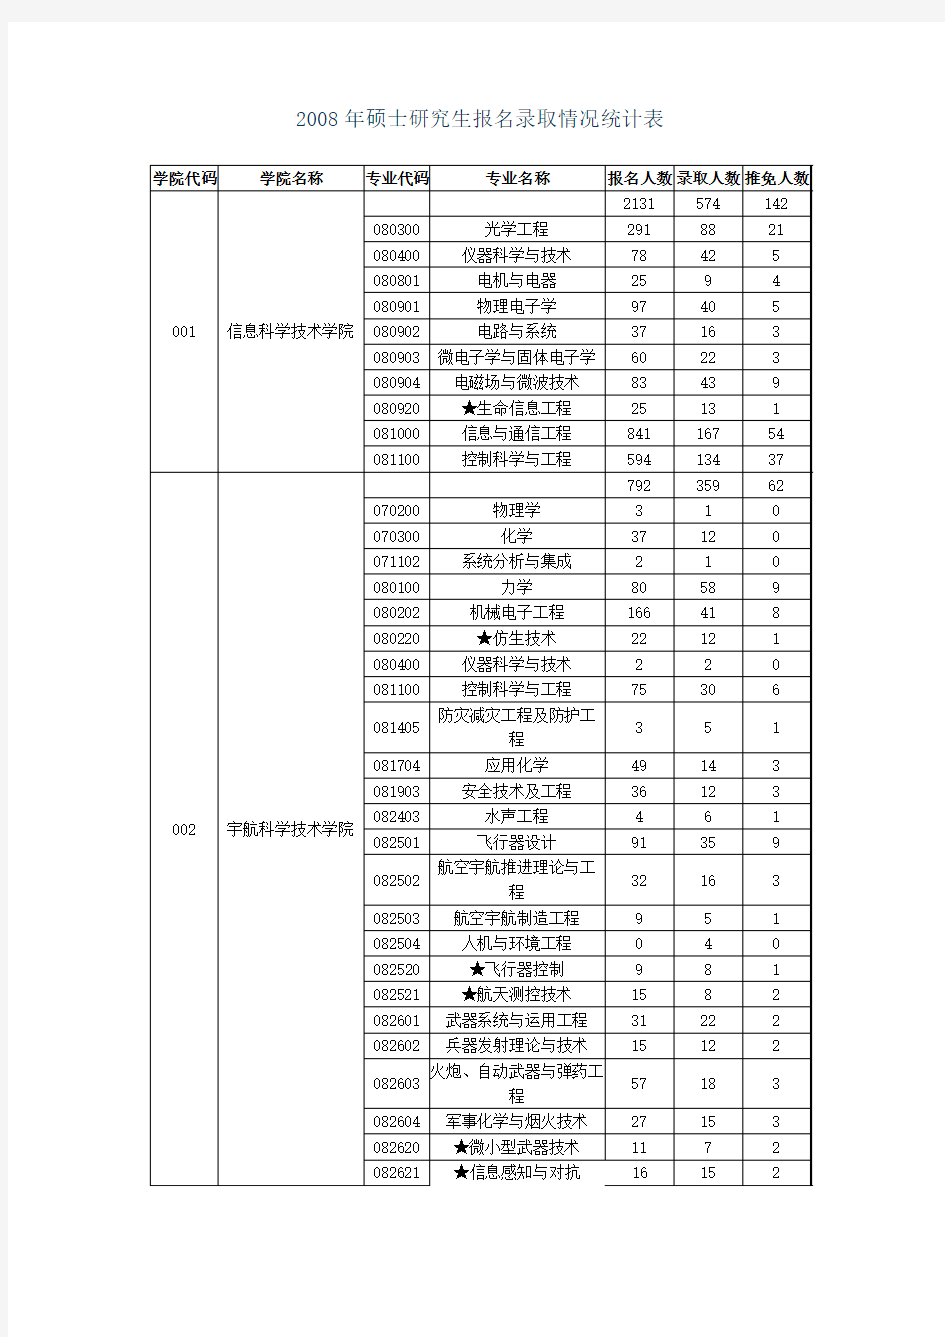 附件15北京理工大学硕士研究生报名录取情况统计表